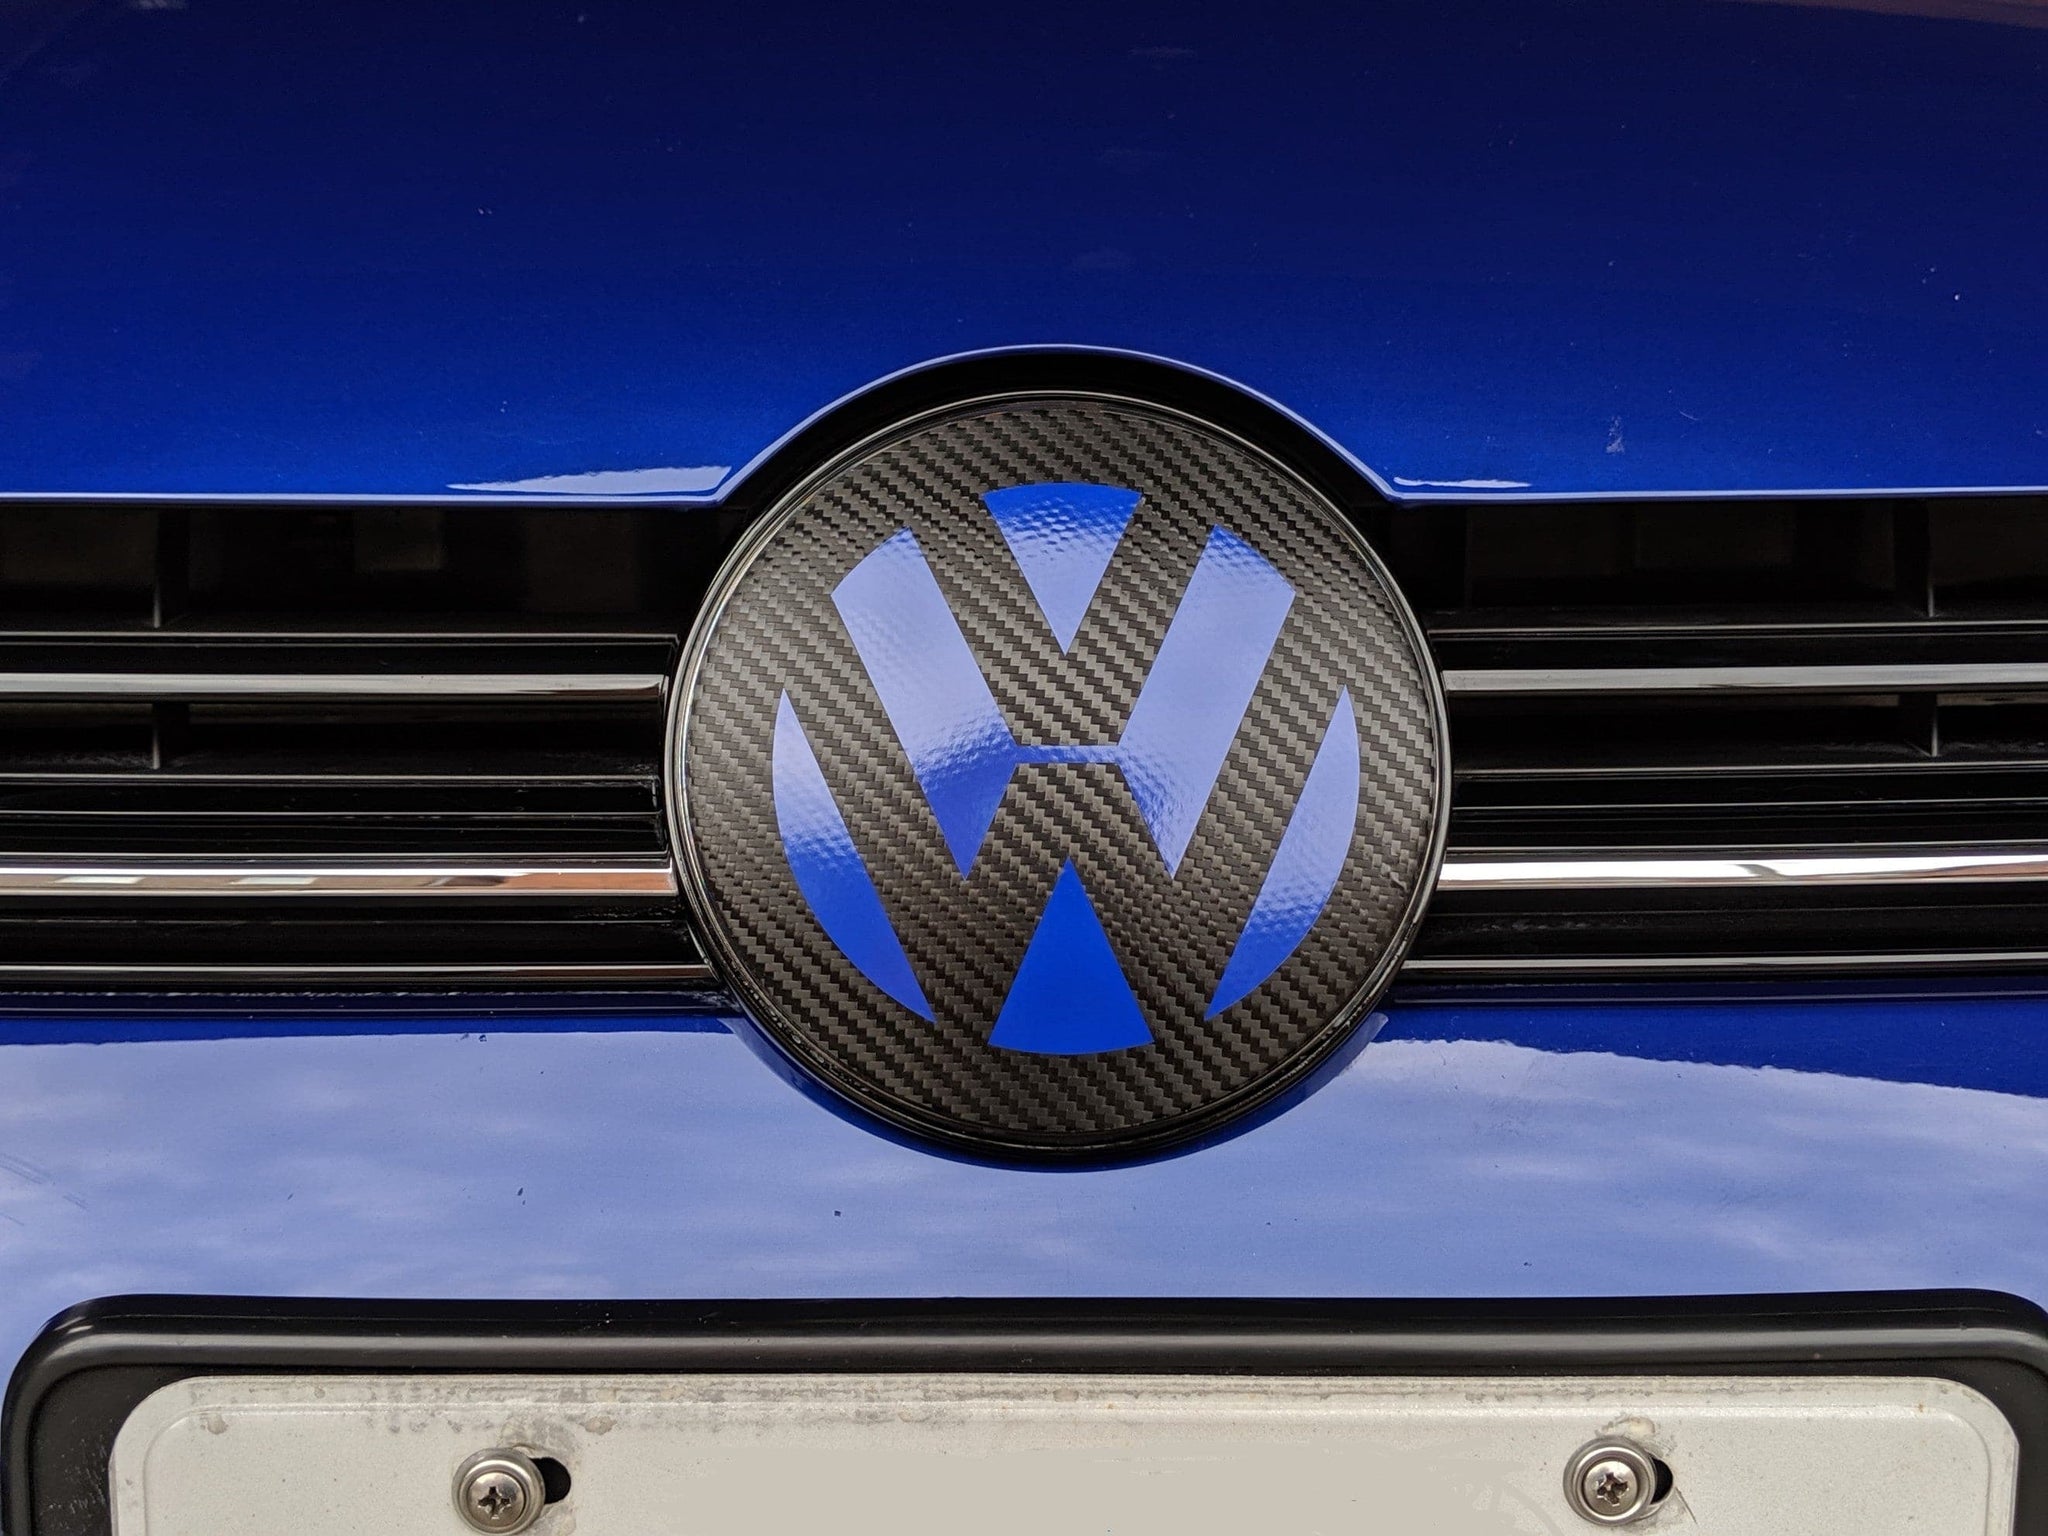 2022 (8th Gen) VW Golf-Frente VW w/ ACC Emblem Overlay - Original VW Design